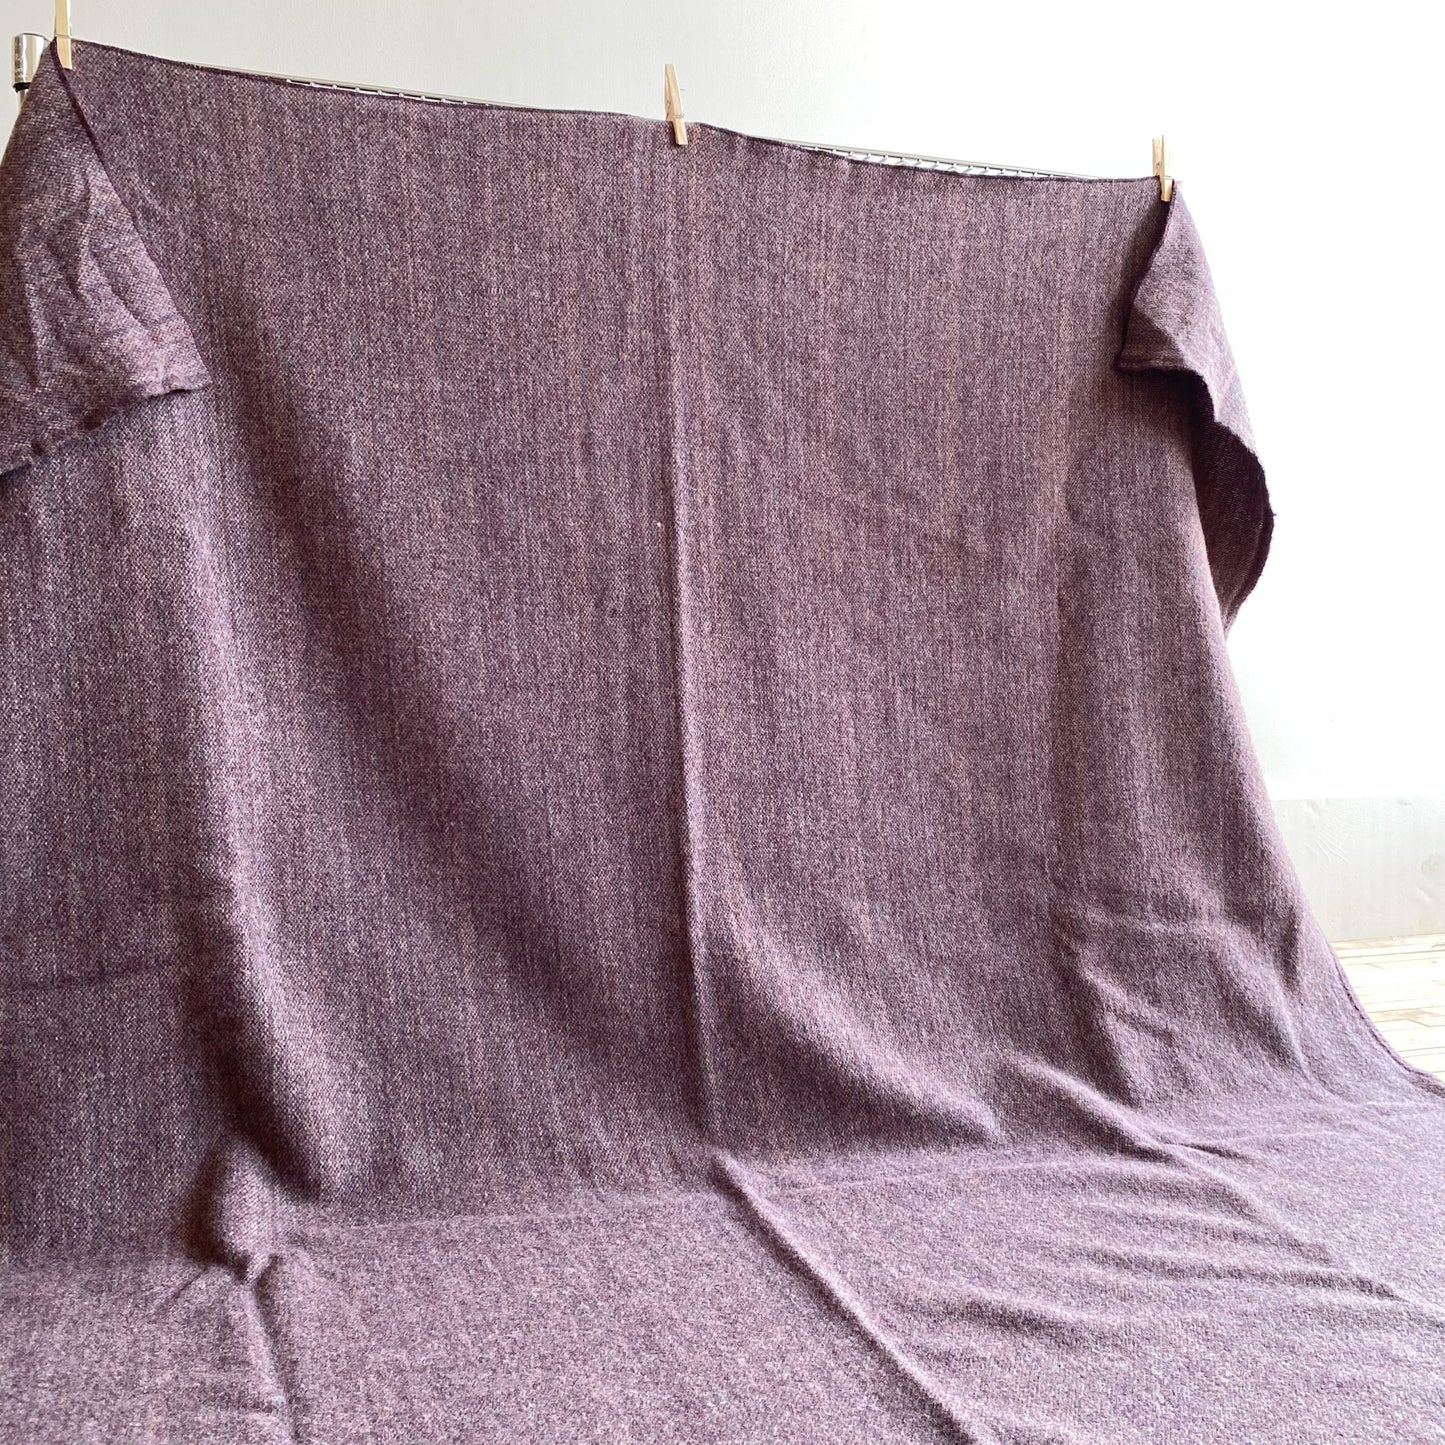 Vintage Eggplant Purple Wool Blanket, by Pearce Woolrich